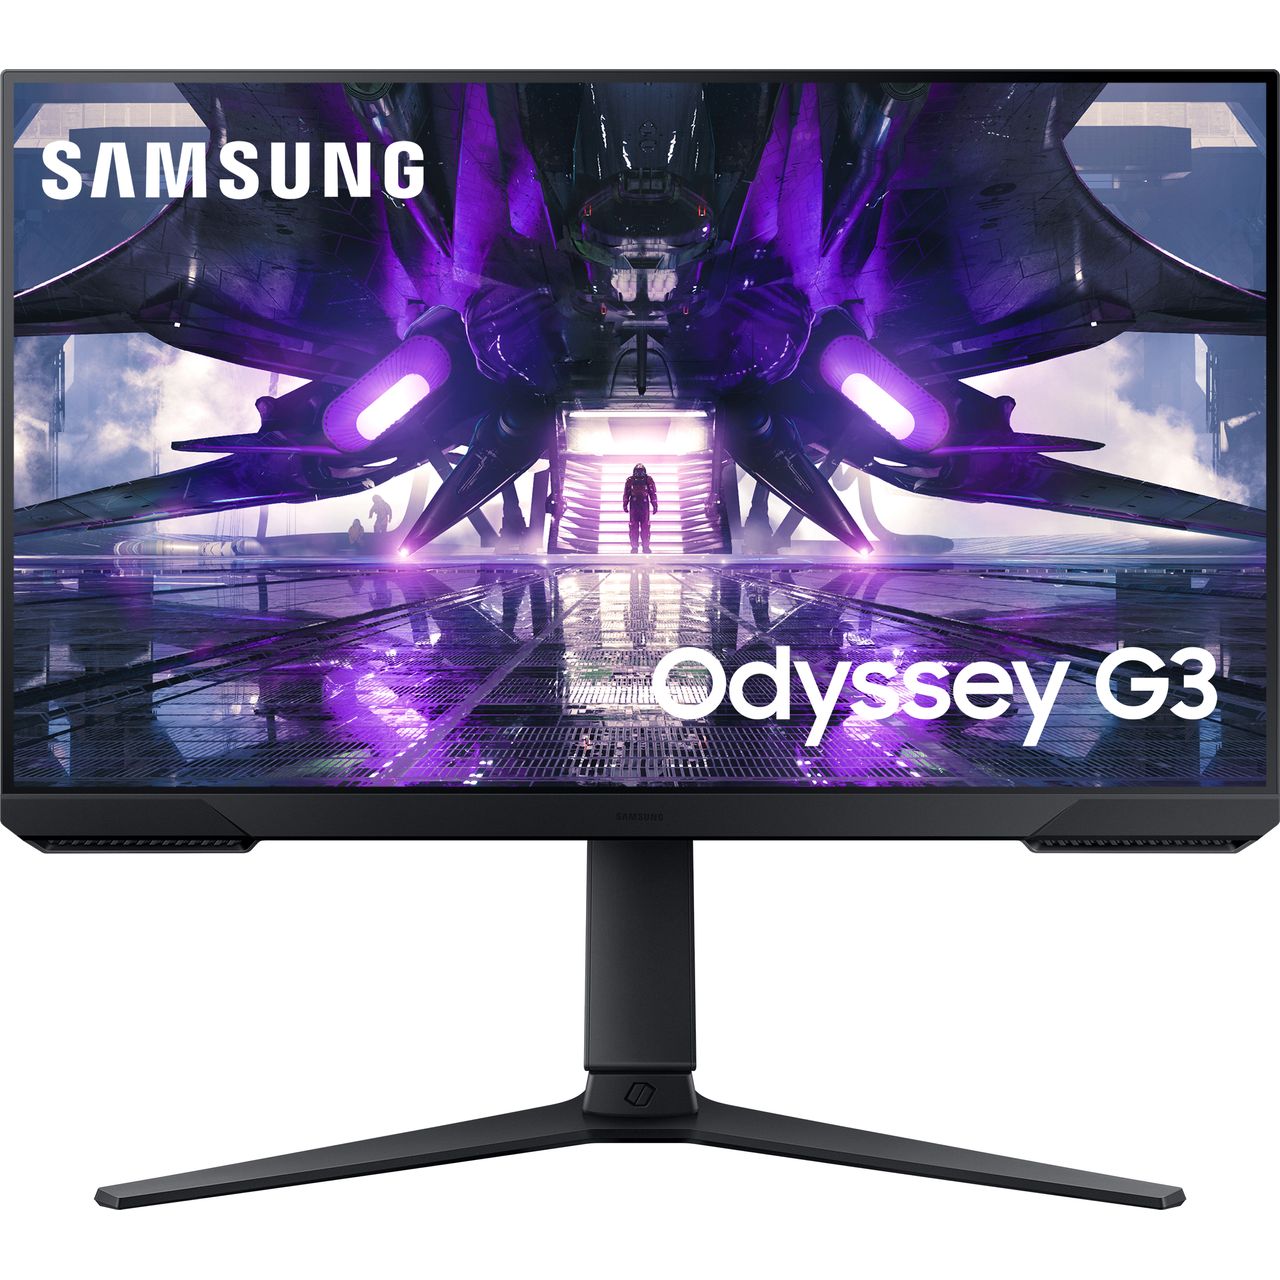 Samsung Odyssey G3 Full HD 24" 165Hz Gaming Monitor with AMD FreeSync - Black